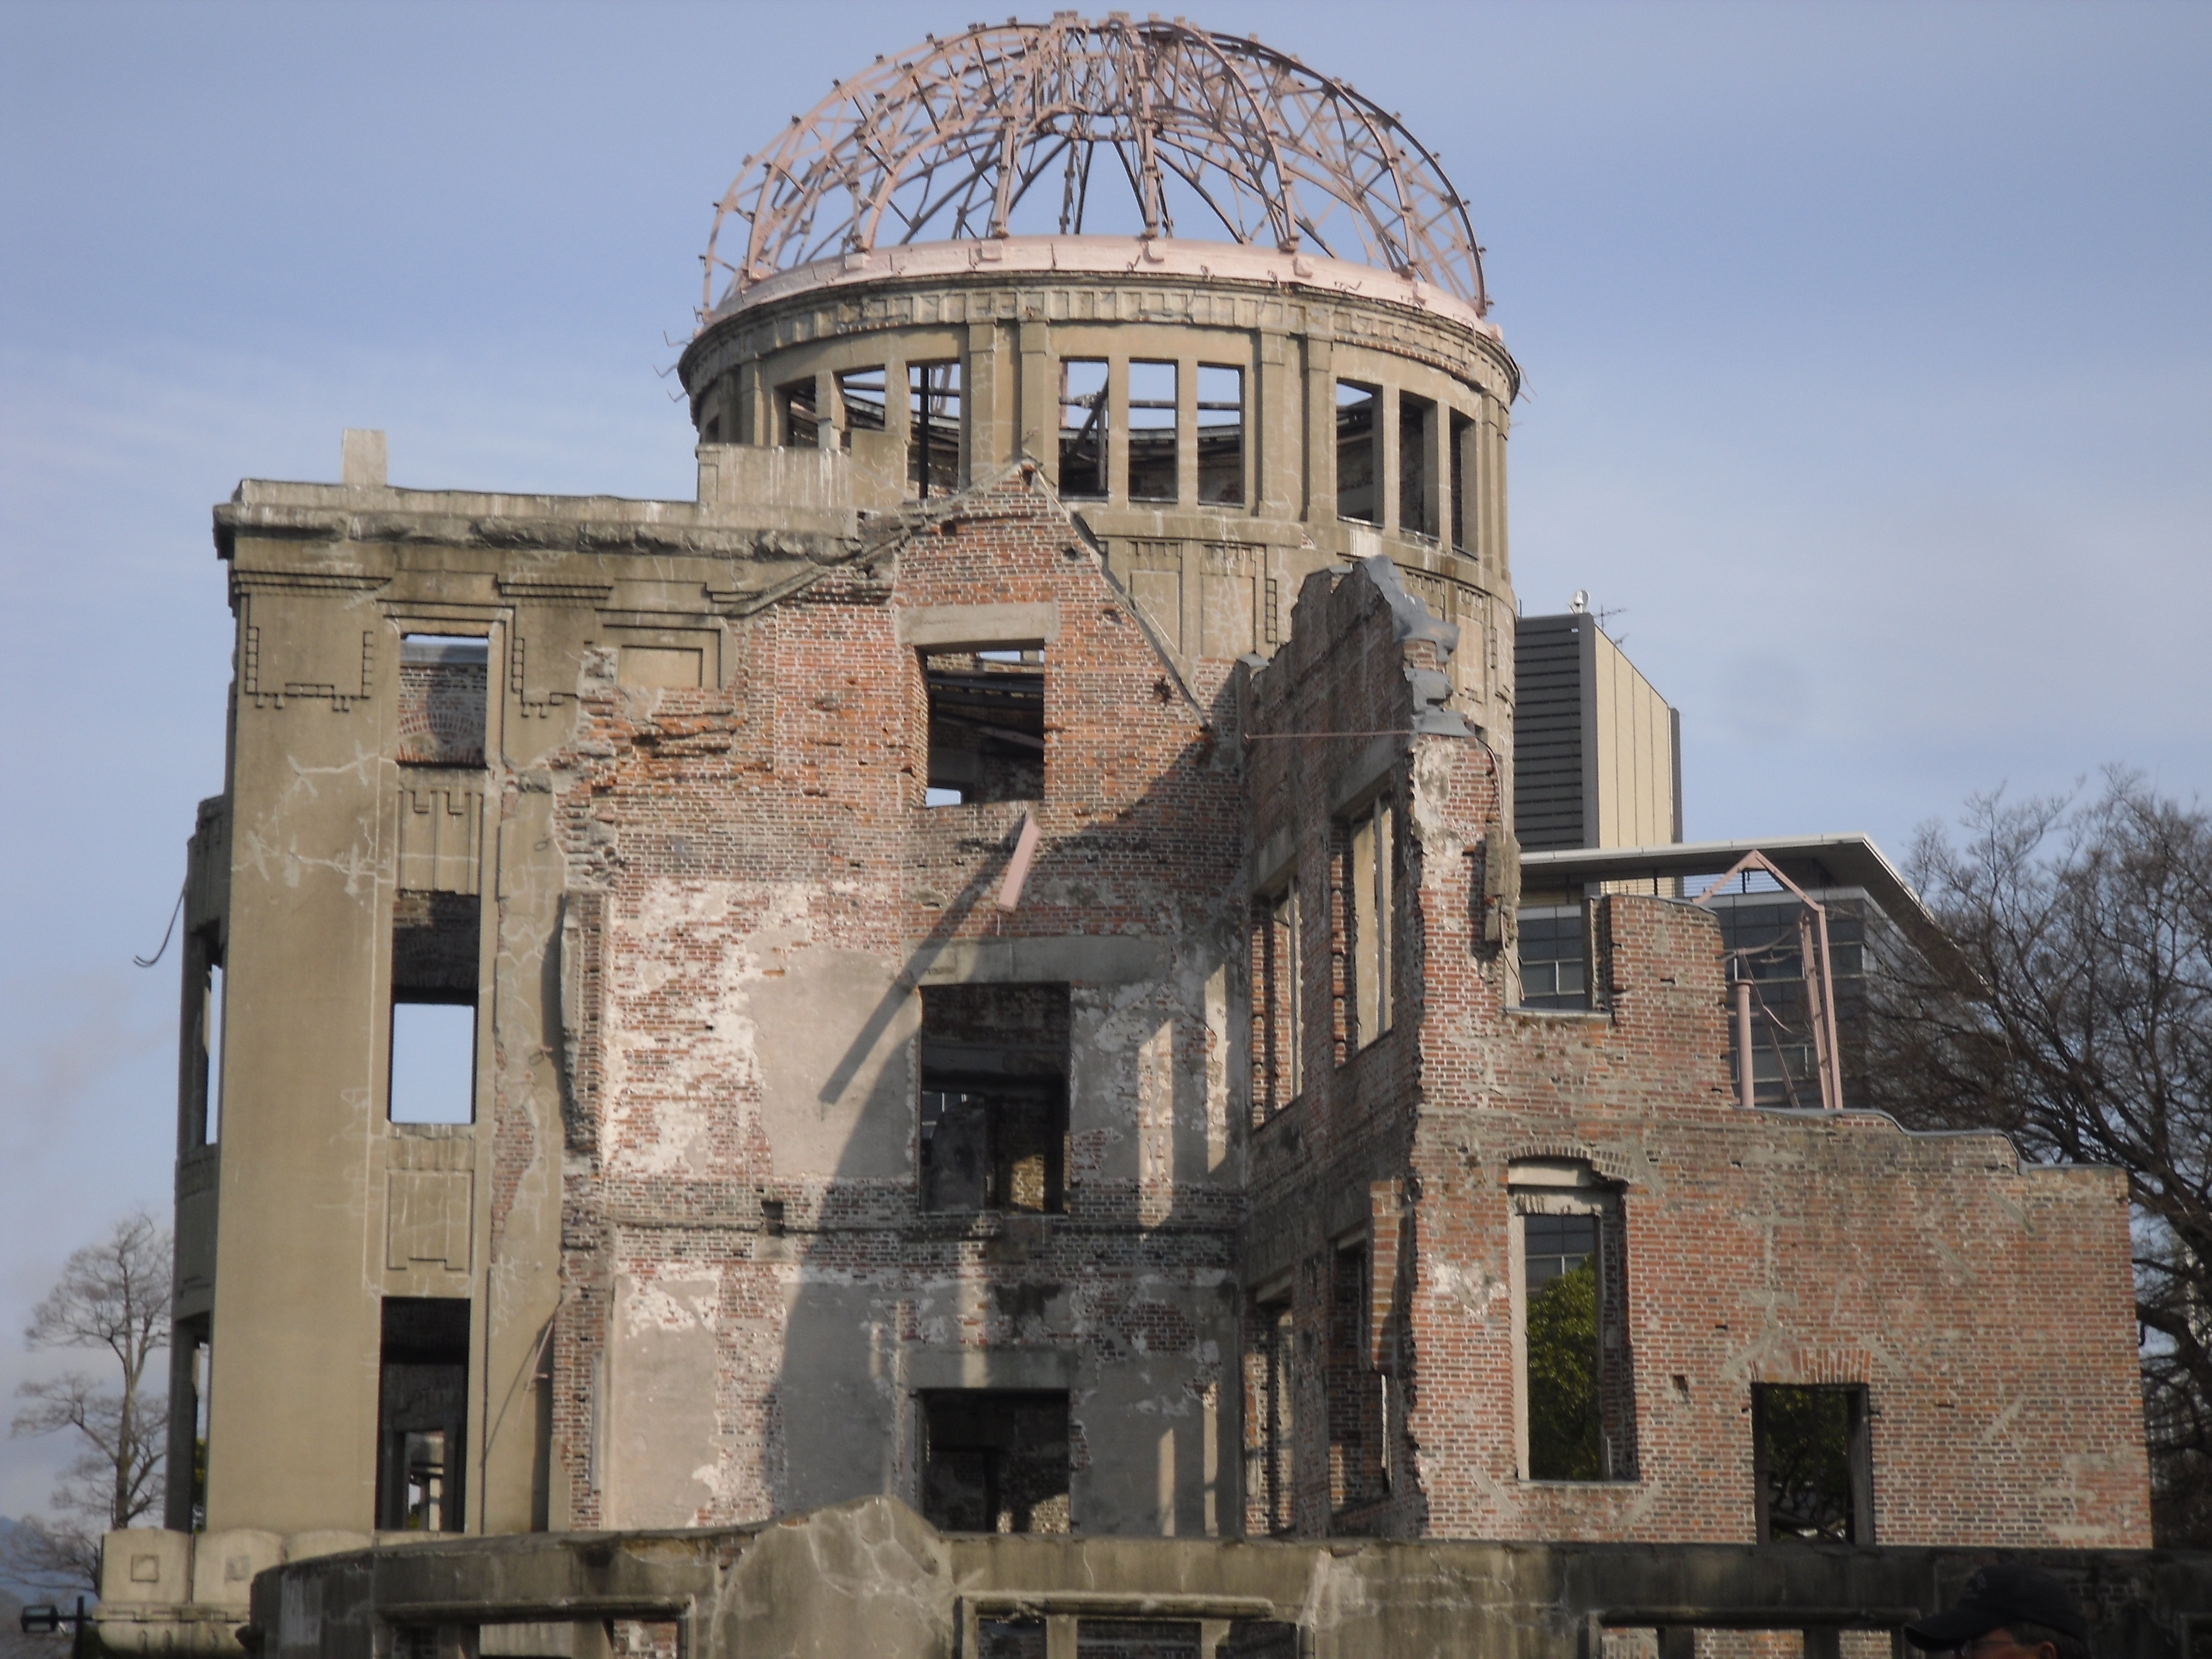 Die Bibliothek von Hiroshima ist noch genau so erhalten, wie sie von der Atombome im zweiten Weltkrieg zerstört wurde.